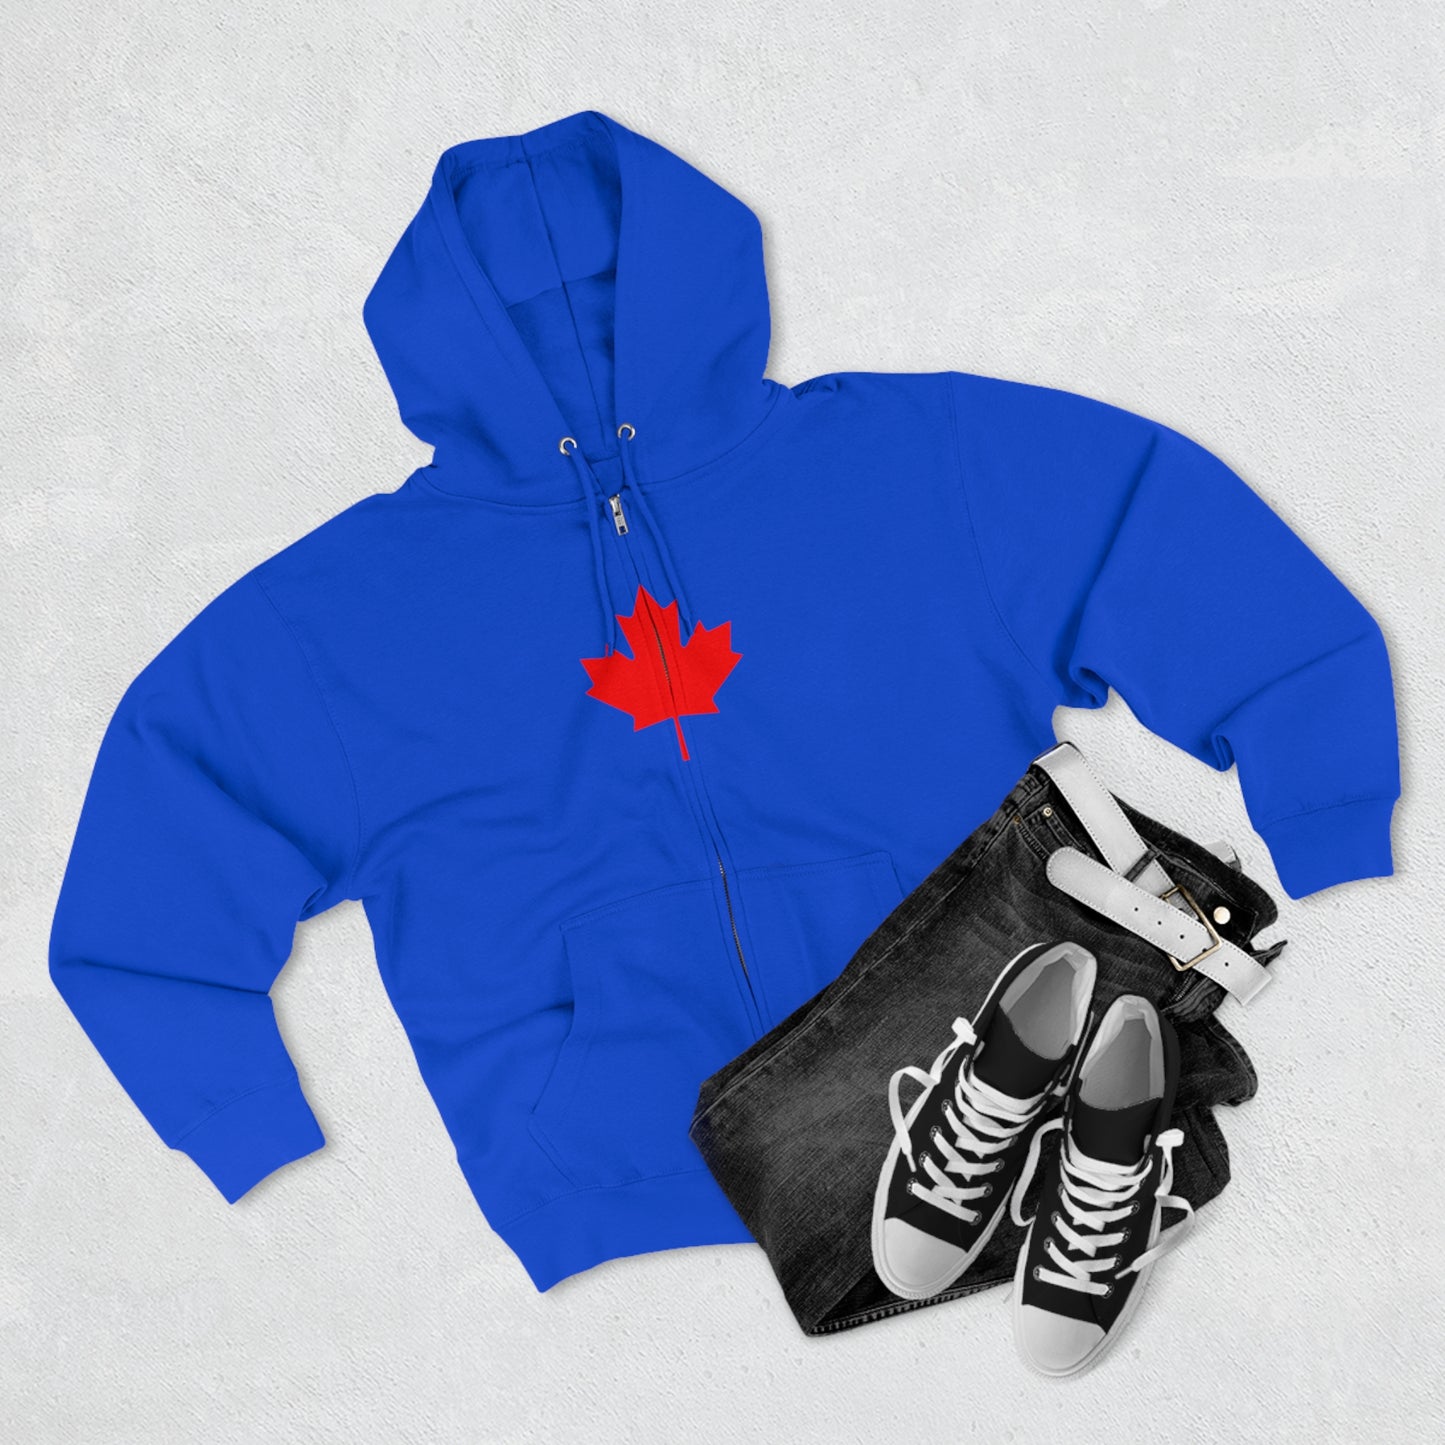 Canadian Maple Leaf, Unisex Premium Full Zip Hoodie